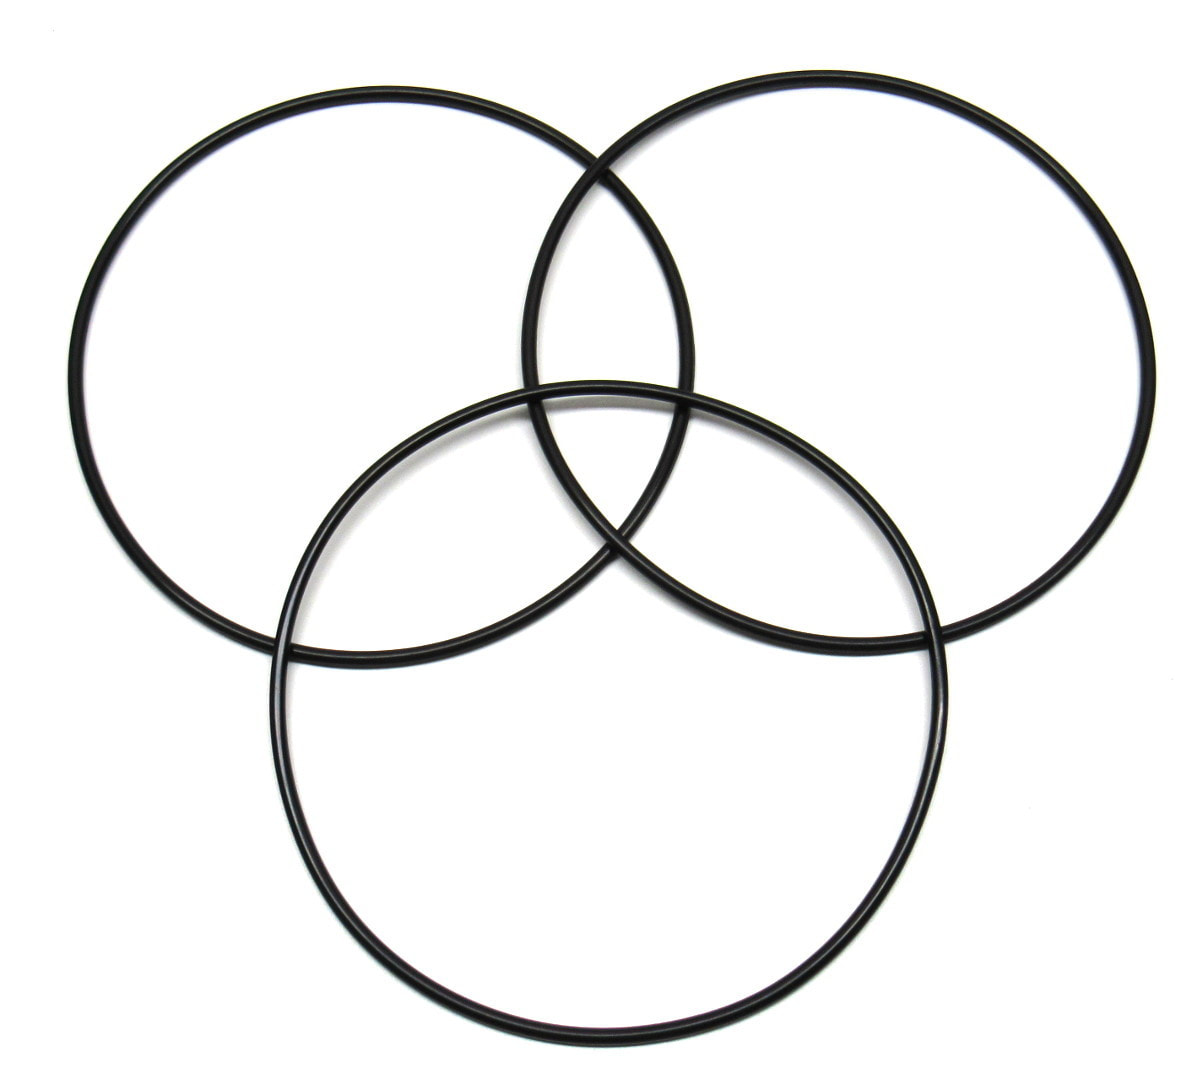 Pentek 151362 Big Clear O-Rings (3 Pack)